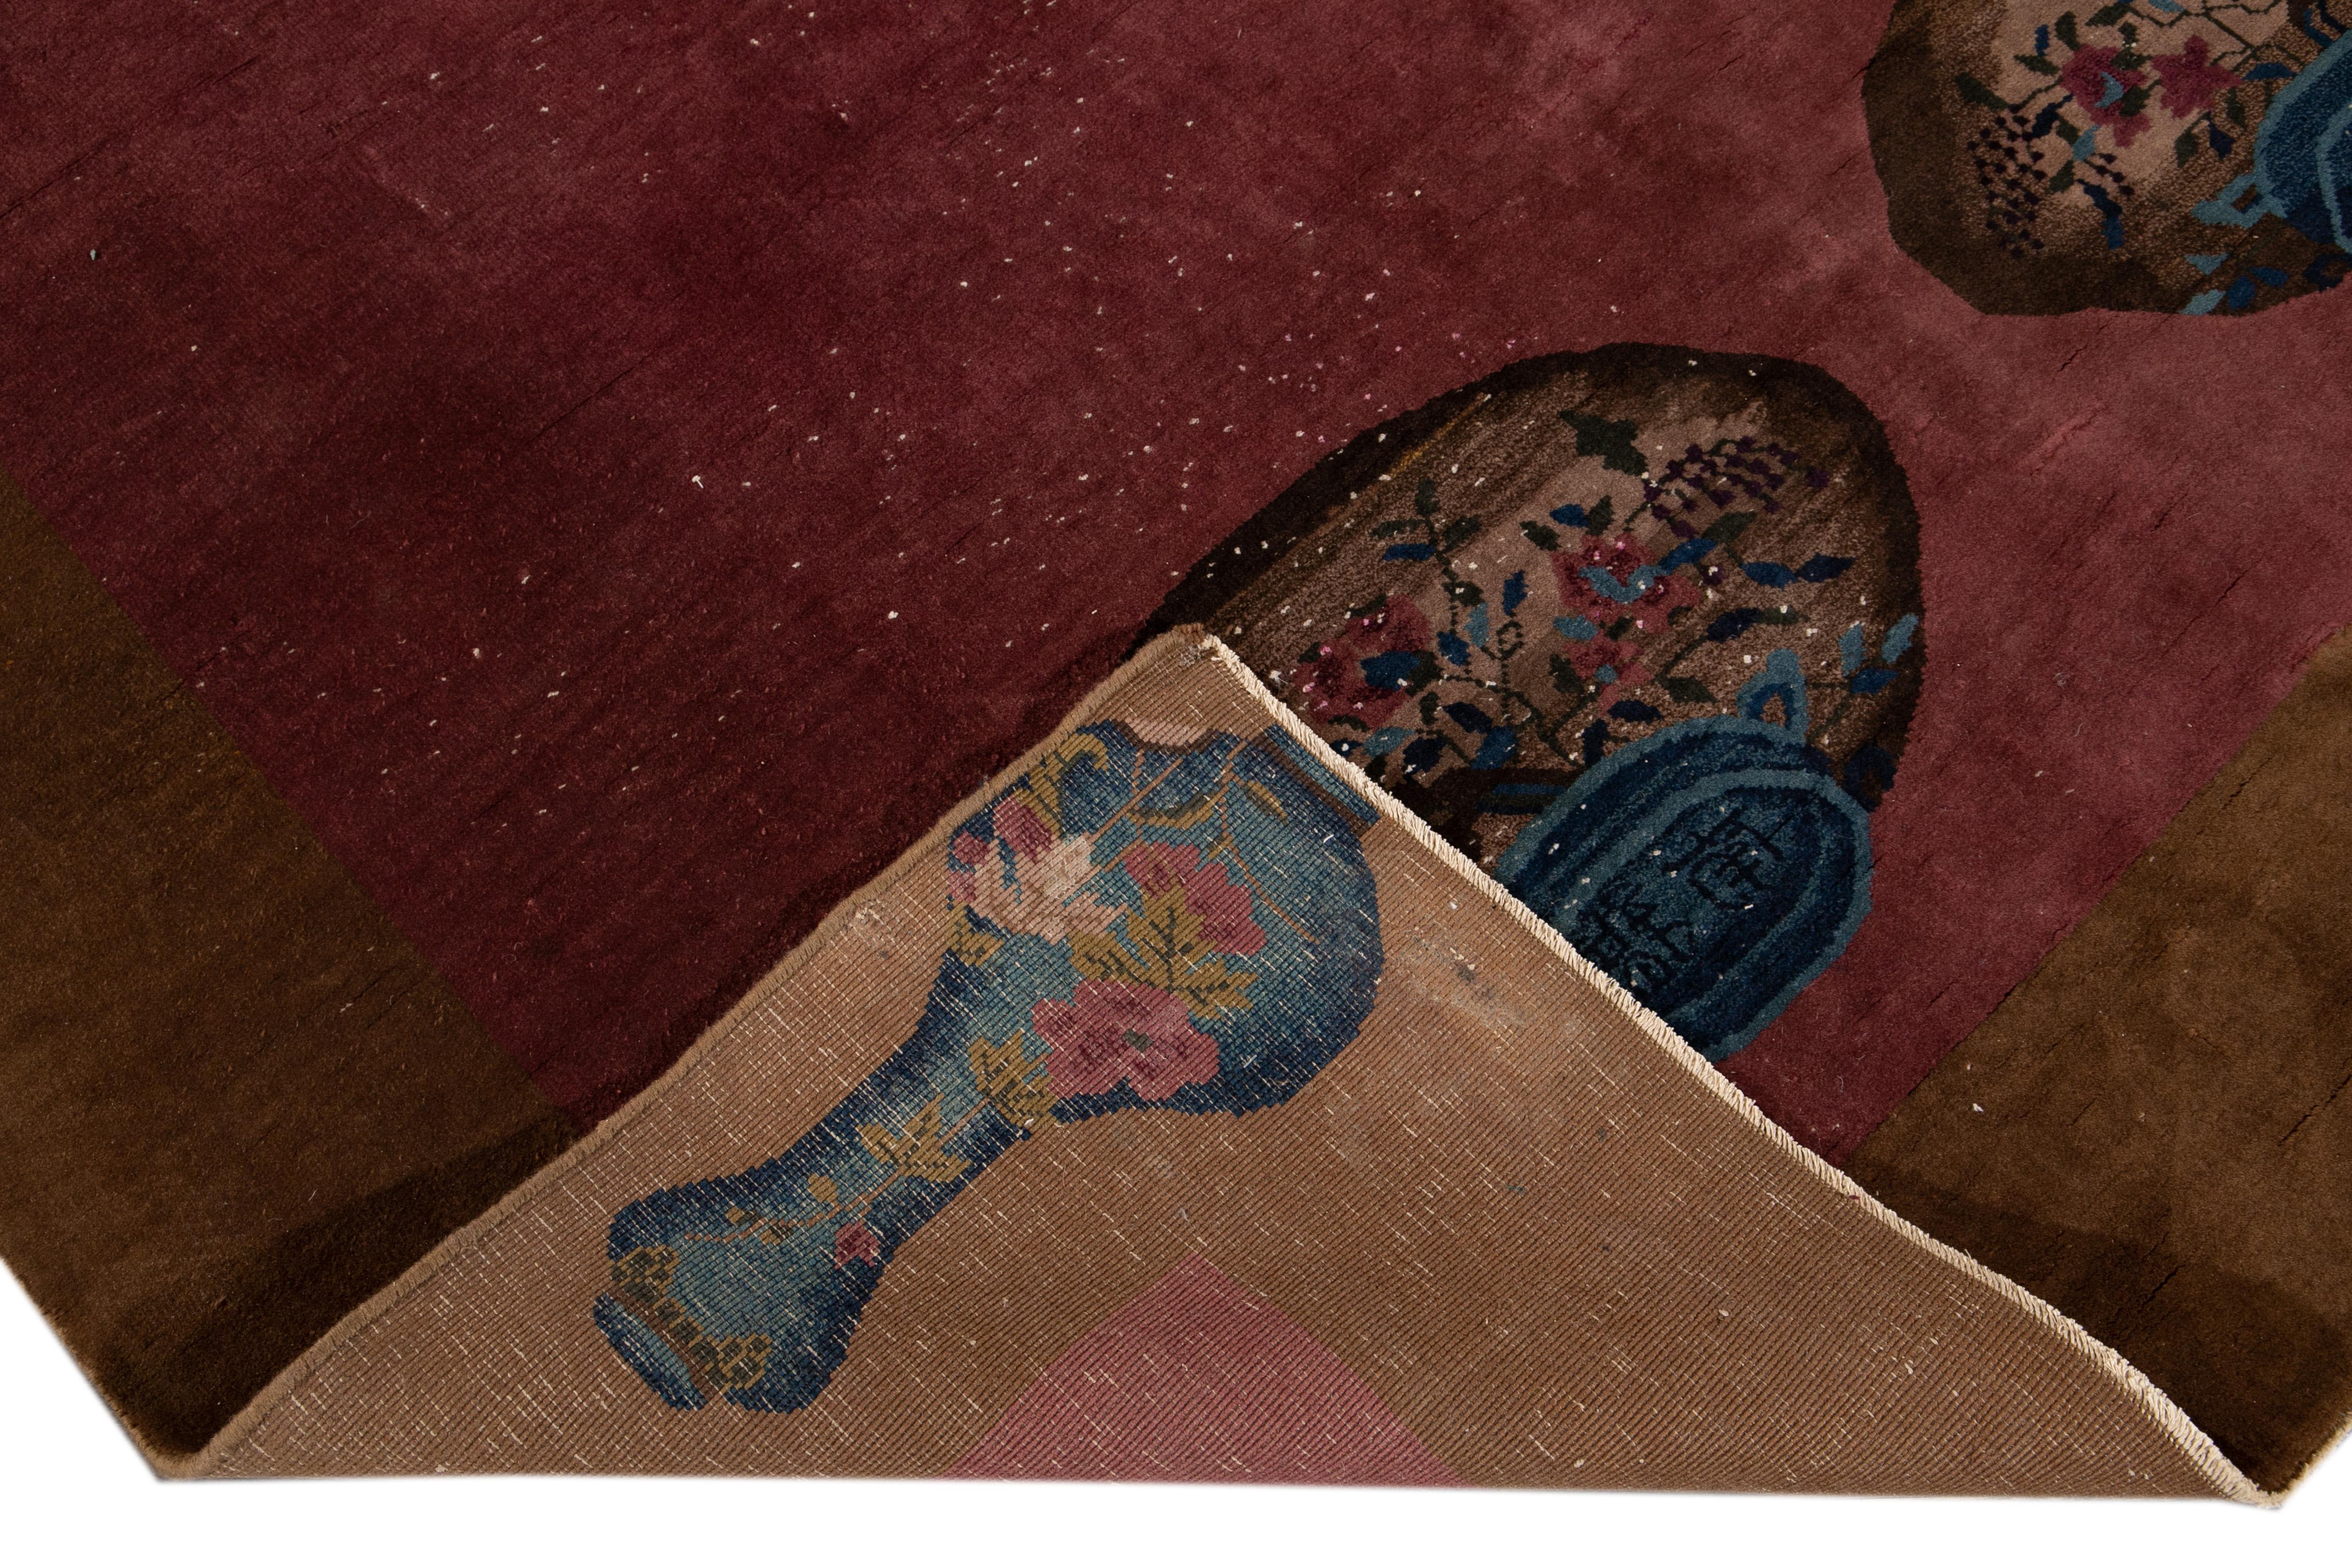 Schöne antike Art Deco chinesischen handgeknüpften Wollteppich mit dem Burgunder Feld. Dieser Teppich hat einen braunen Rahmen und Akzente in Rot, Beige und Blau in einem wunderschönen chinesischen Blumenmuster.

Dieser Teppich misst 7'9